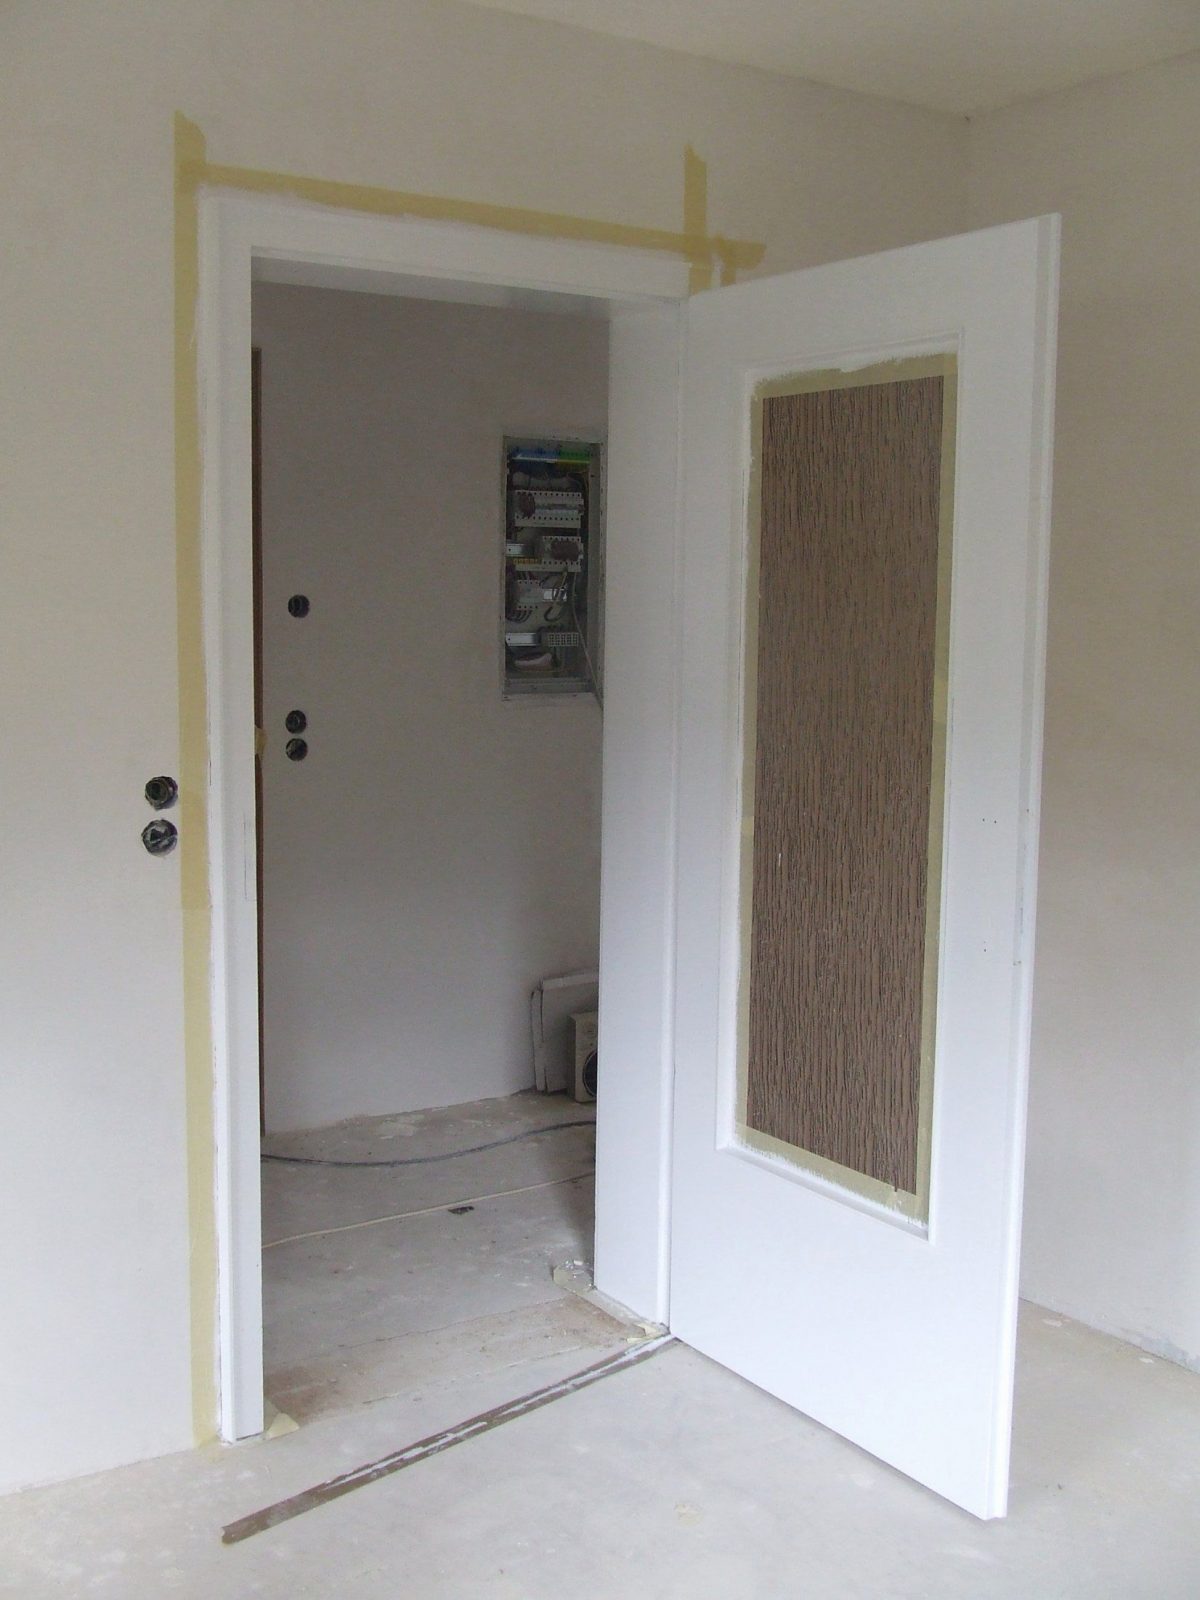 Furnierte Türen Streichen Frische Türen Weiß Streichen Anleitung In von Kann Man Furnierte Türen Streichen Photo